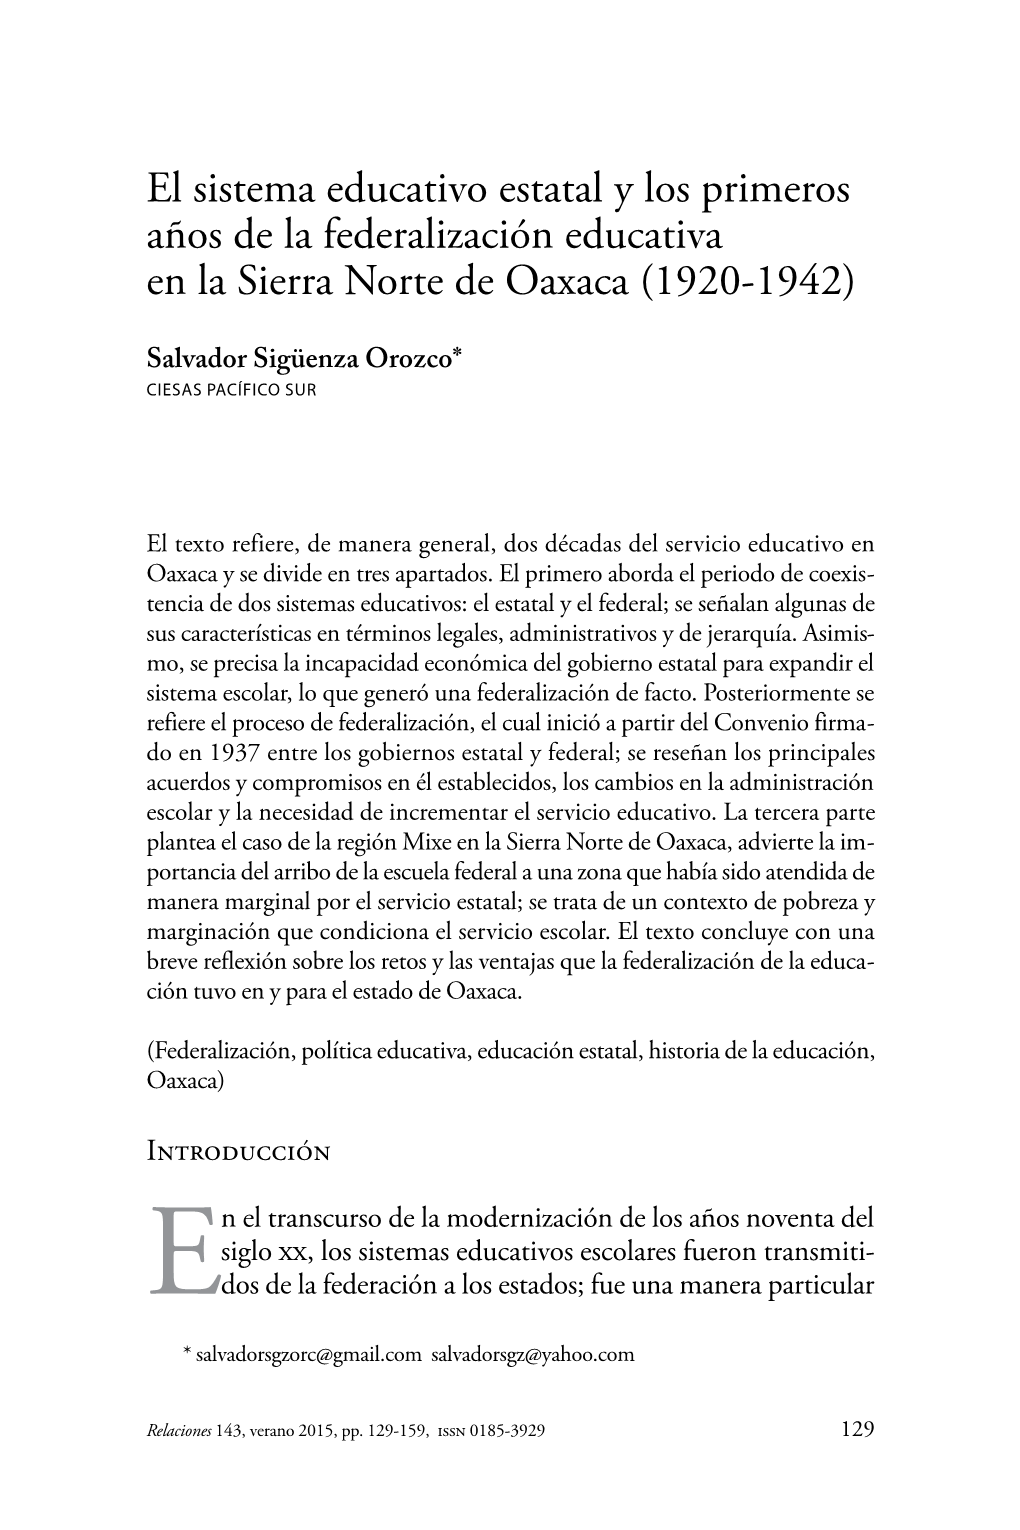 El Sistema Educativo Estatal Y Los Primeros Años De La Federalización Educativa En La Sierra Norte De Oaxaca (1920-1942)